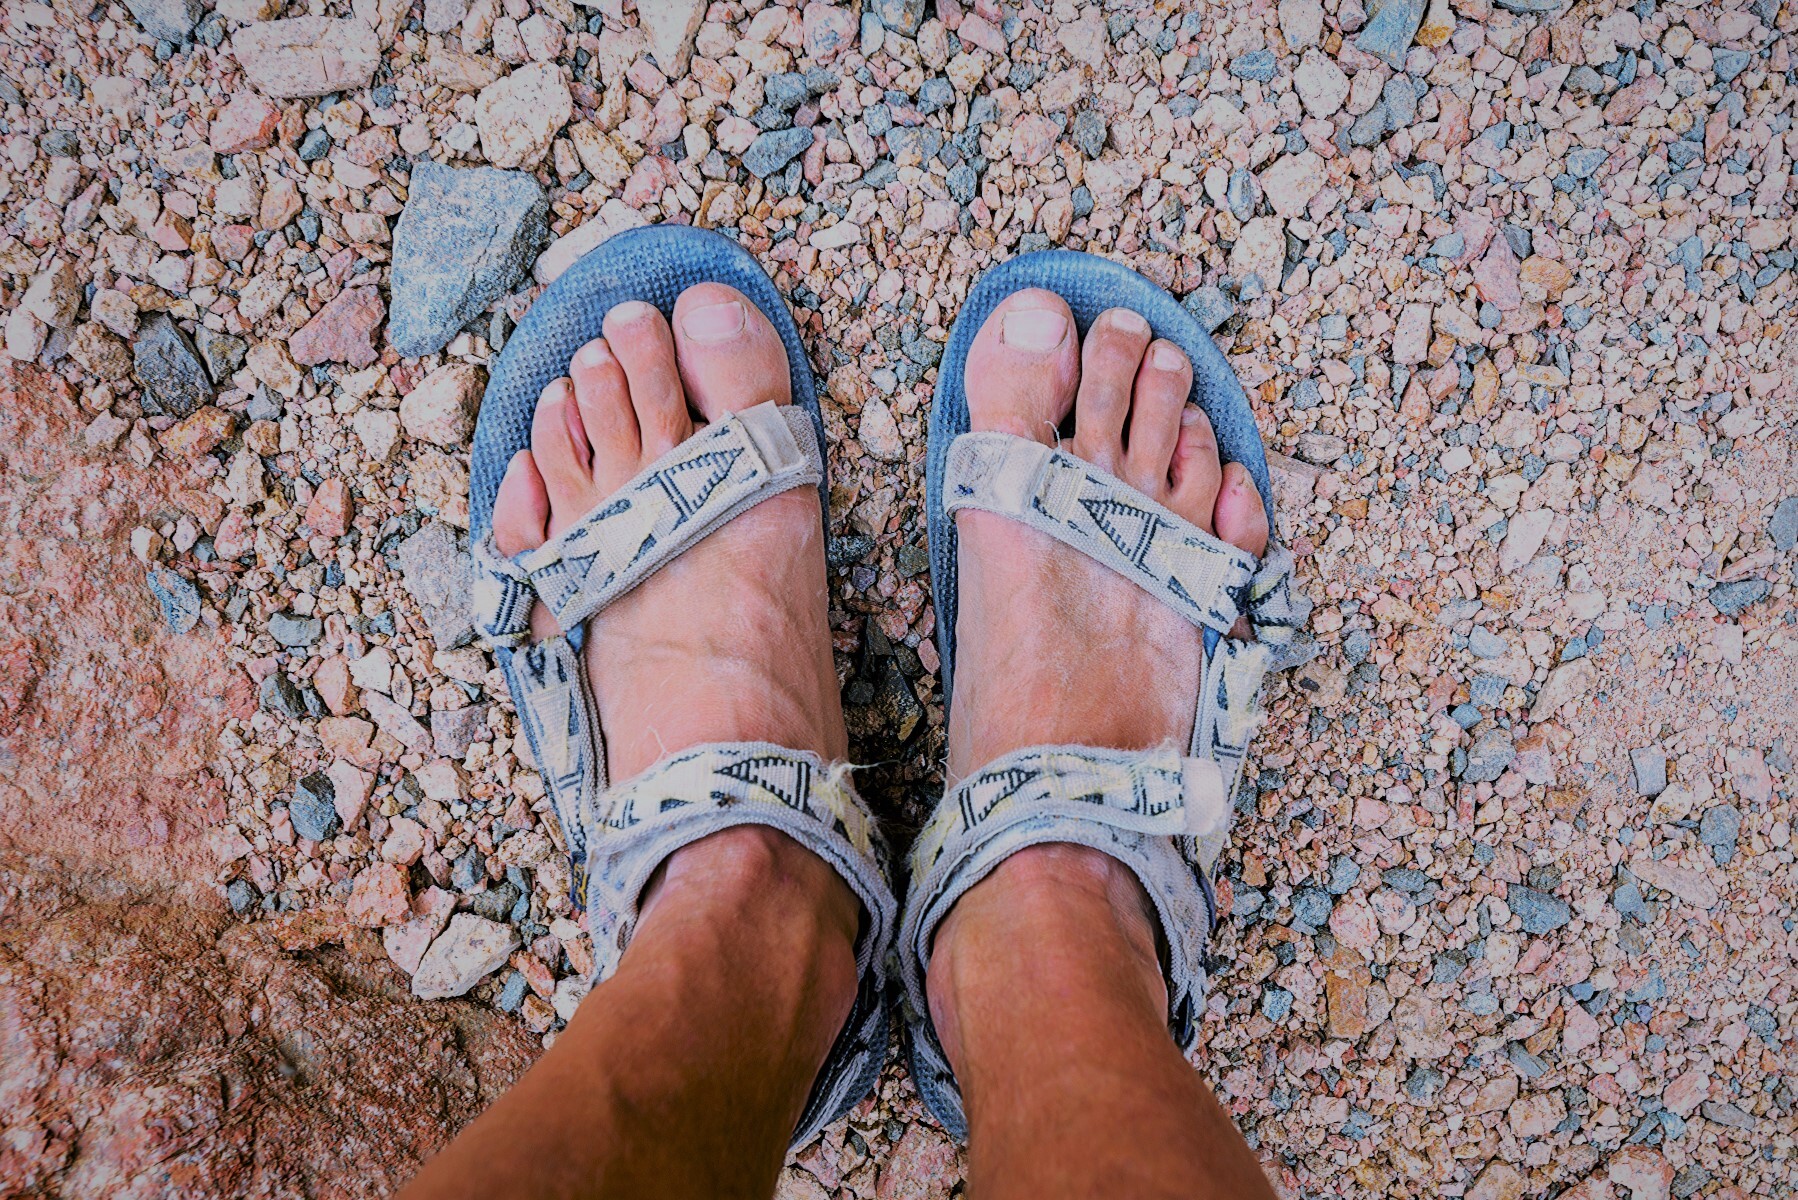 Wide feet. Песок в сандалях с людьми. Картинка чел в сандалях. Четыре человека в сандалах. Barefoot Hiking Desert.